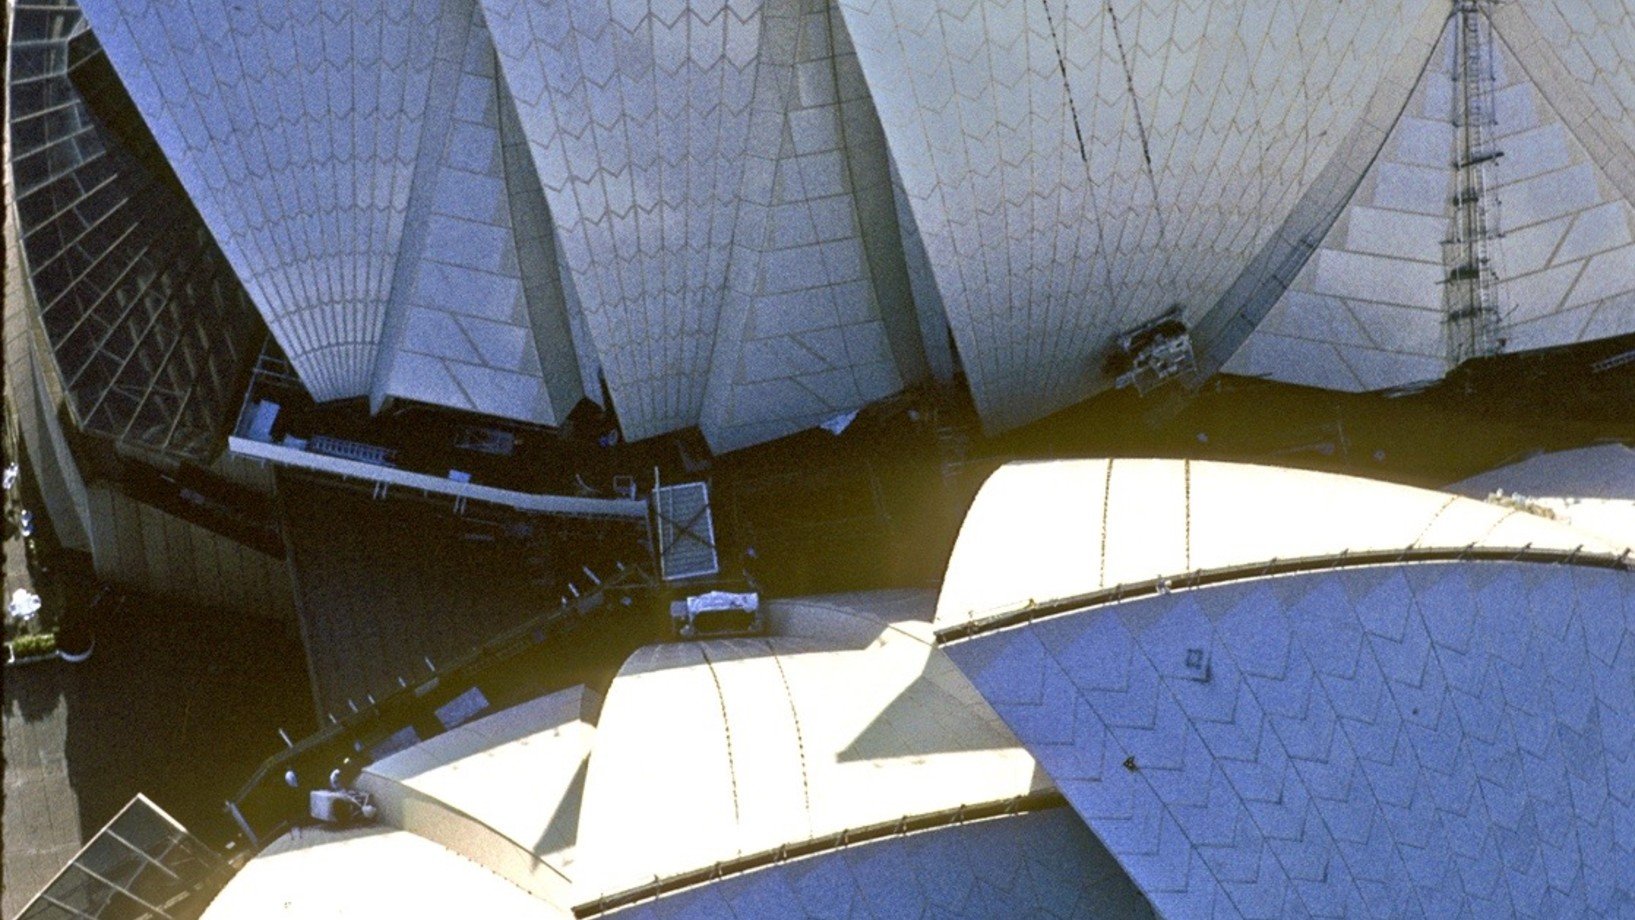 Kein Dach des 20. Jahrhunders ist diesem vergleichbar. Eigentlich hat das Opernhaus der Stadt Sydney gar kein Dach – es ist Dach. An seinem Dach wäre der Bau fast gescheitert. Der dänische Architekt Jörn Utzon hatte 1957 den Wettbewerb mit einer blossen Skizze gewonnen. Deren Verwirklichung ab 1959 forderte die damals verfügbare Bautechnik heraus. Namentlich die eleganten Dachschalen machten Kopfzerbrechen. Lochkarten-Computer rechneten

18 Monate lang an deren Krümmung herum, 44 Zeichner fixierten begle…